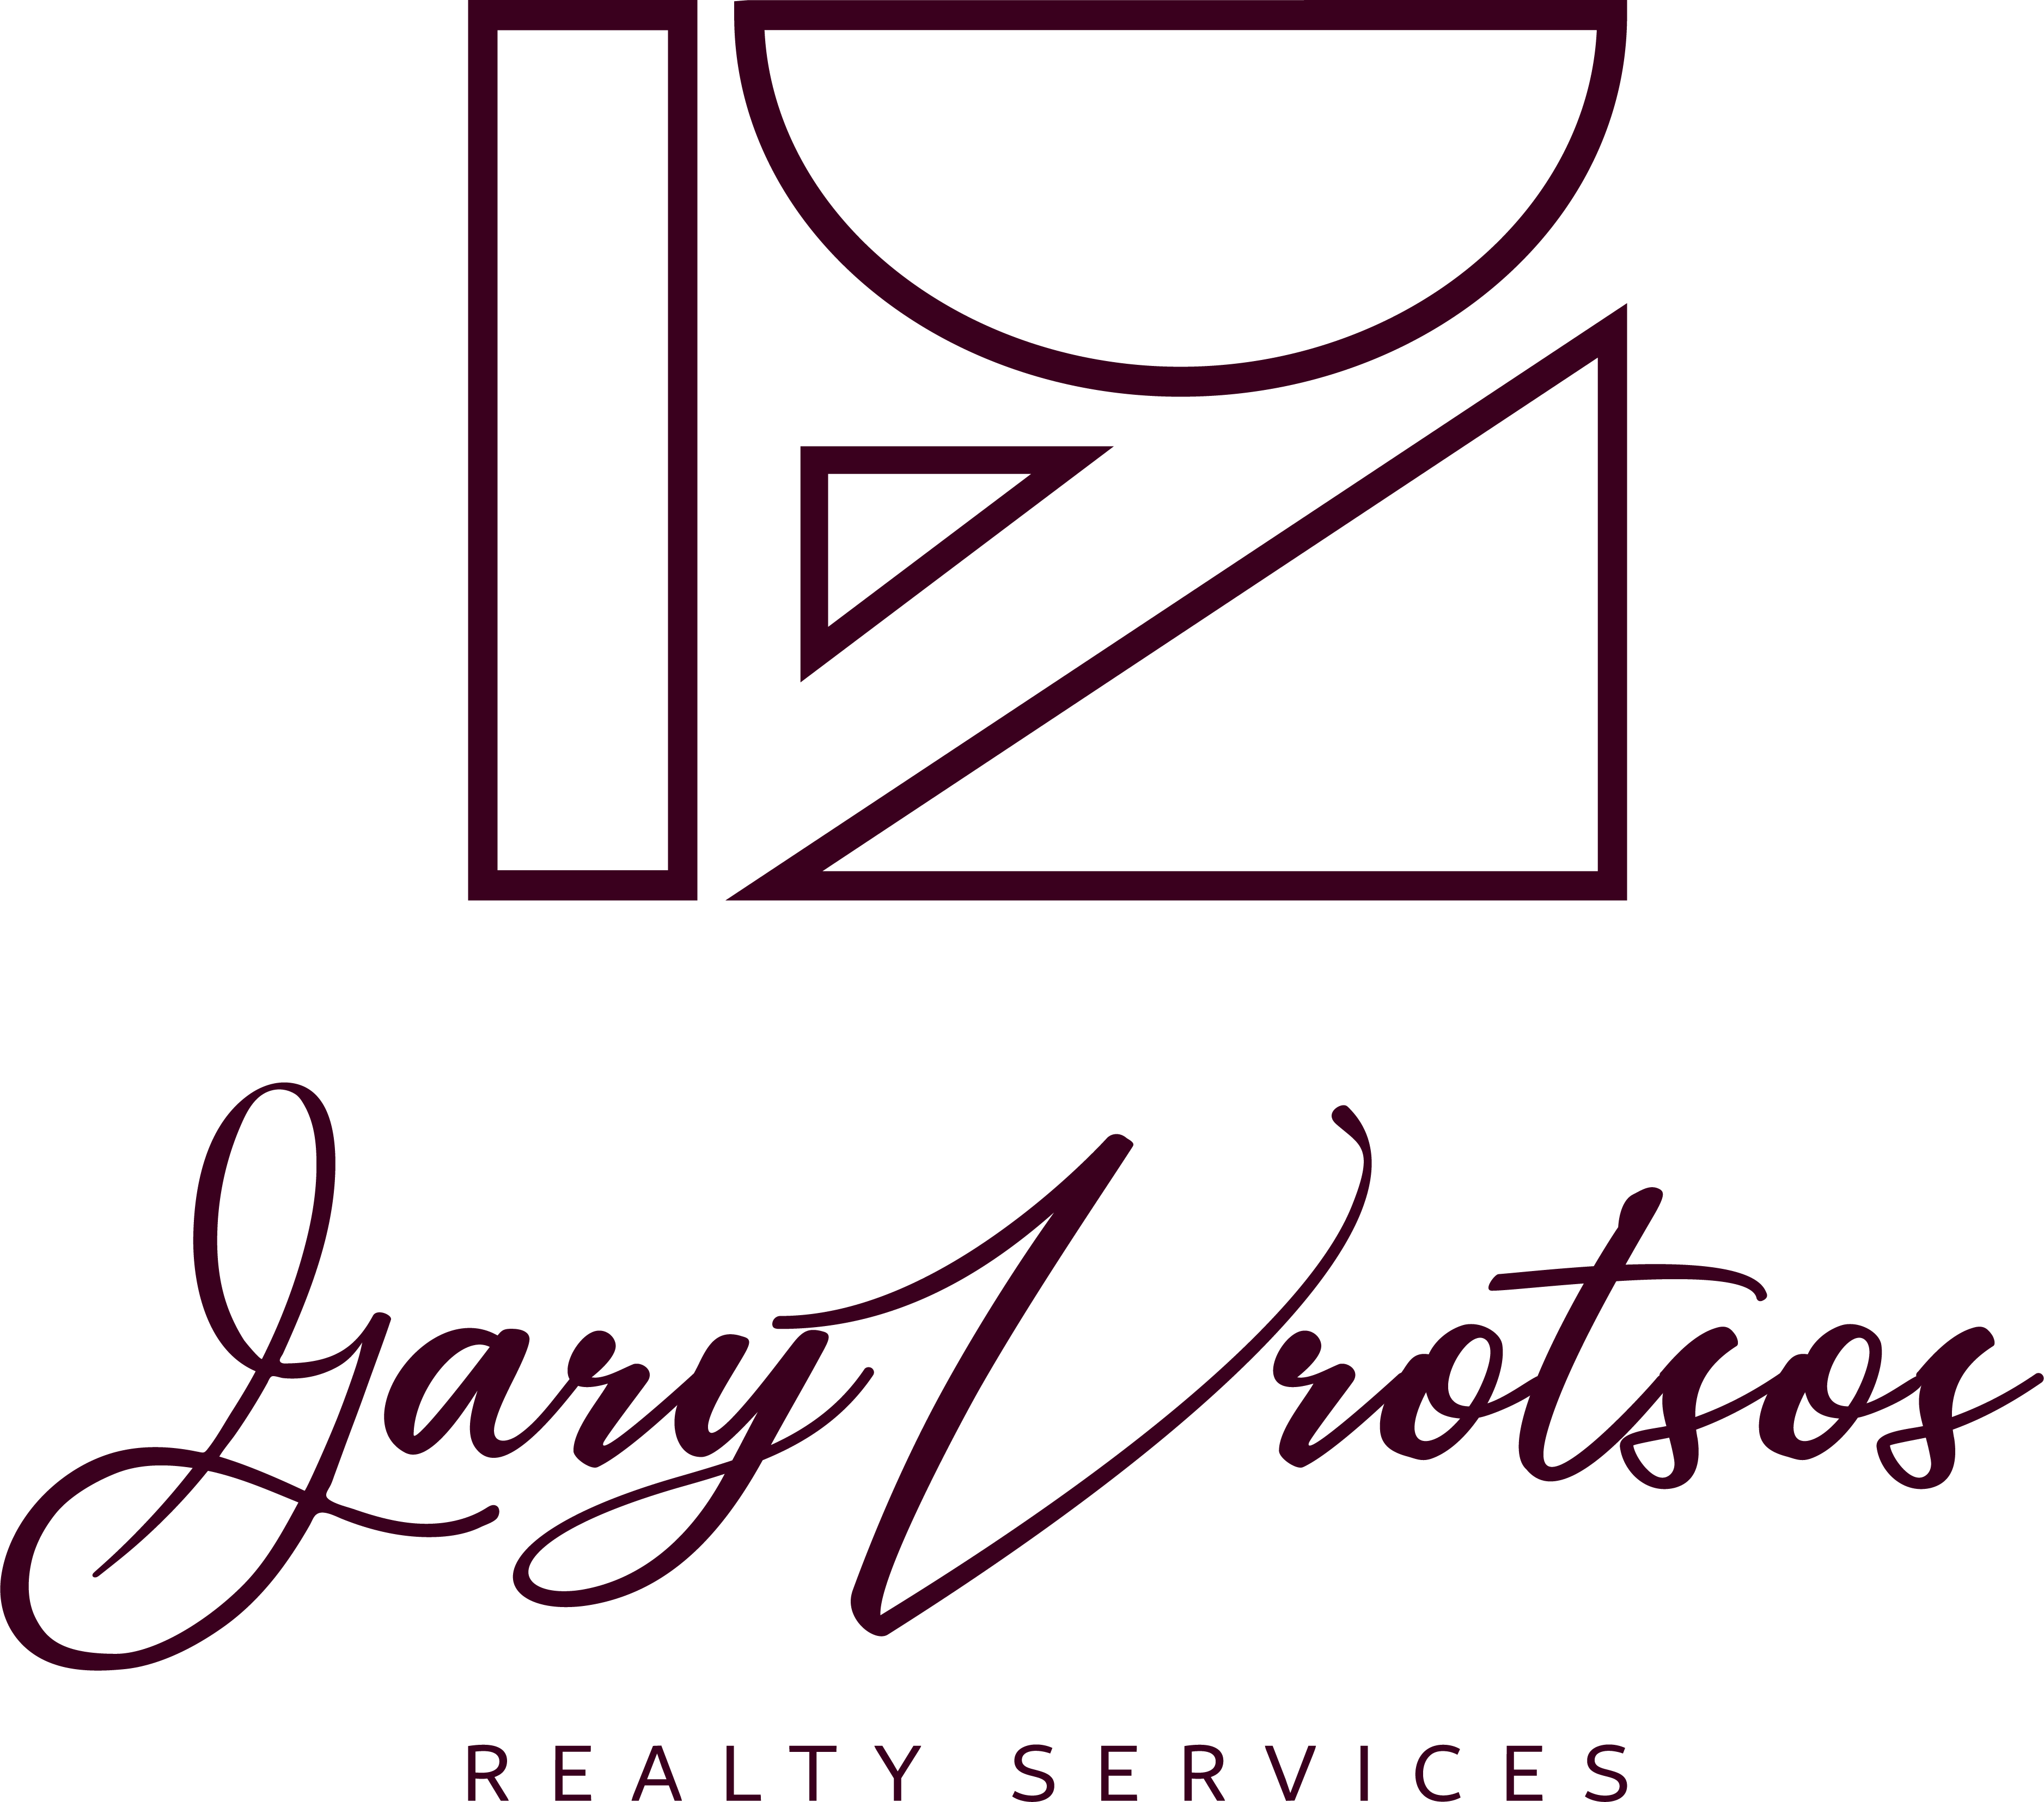 Gary Vrotsos Realty Services